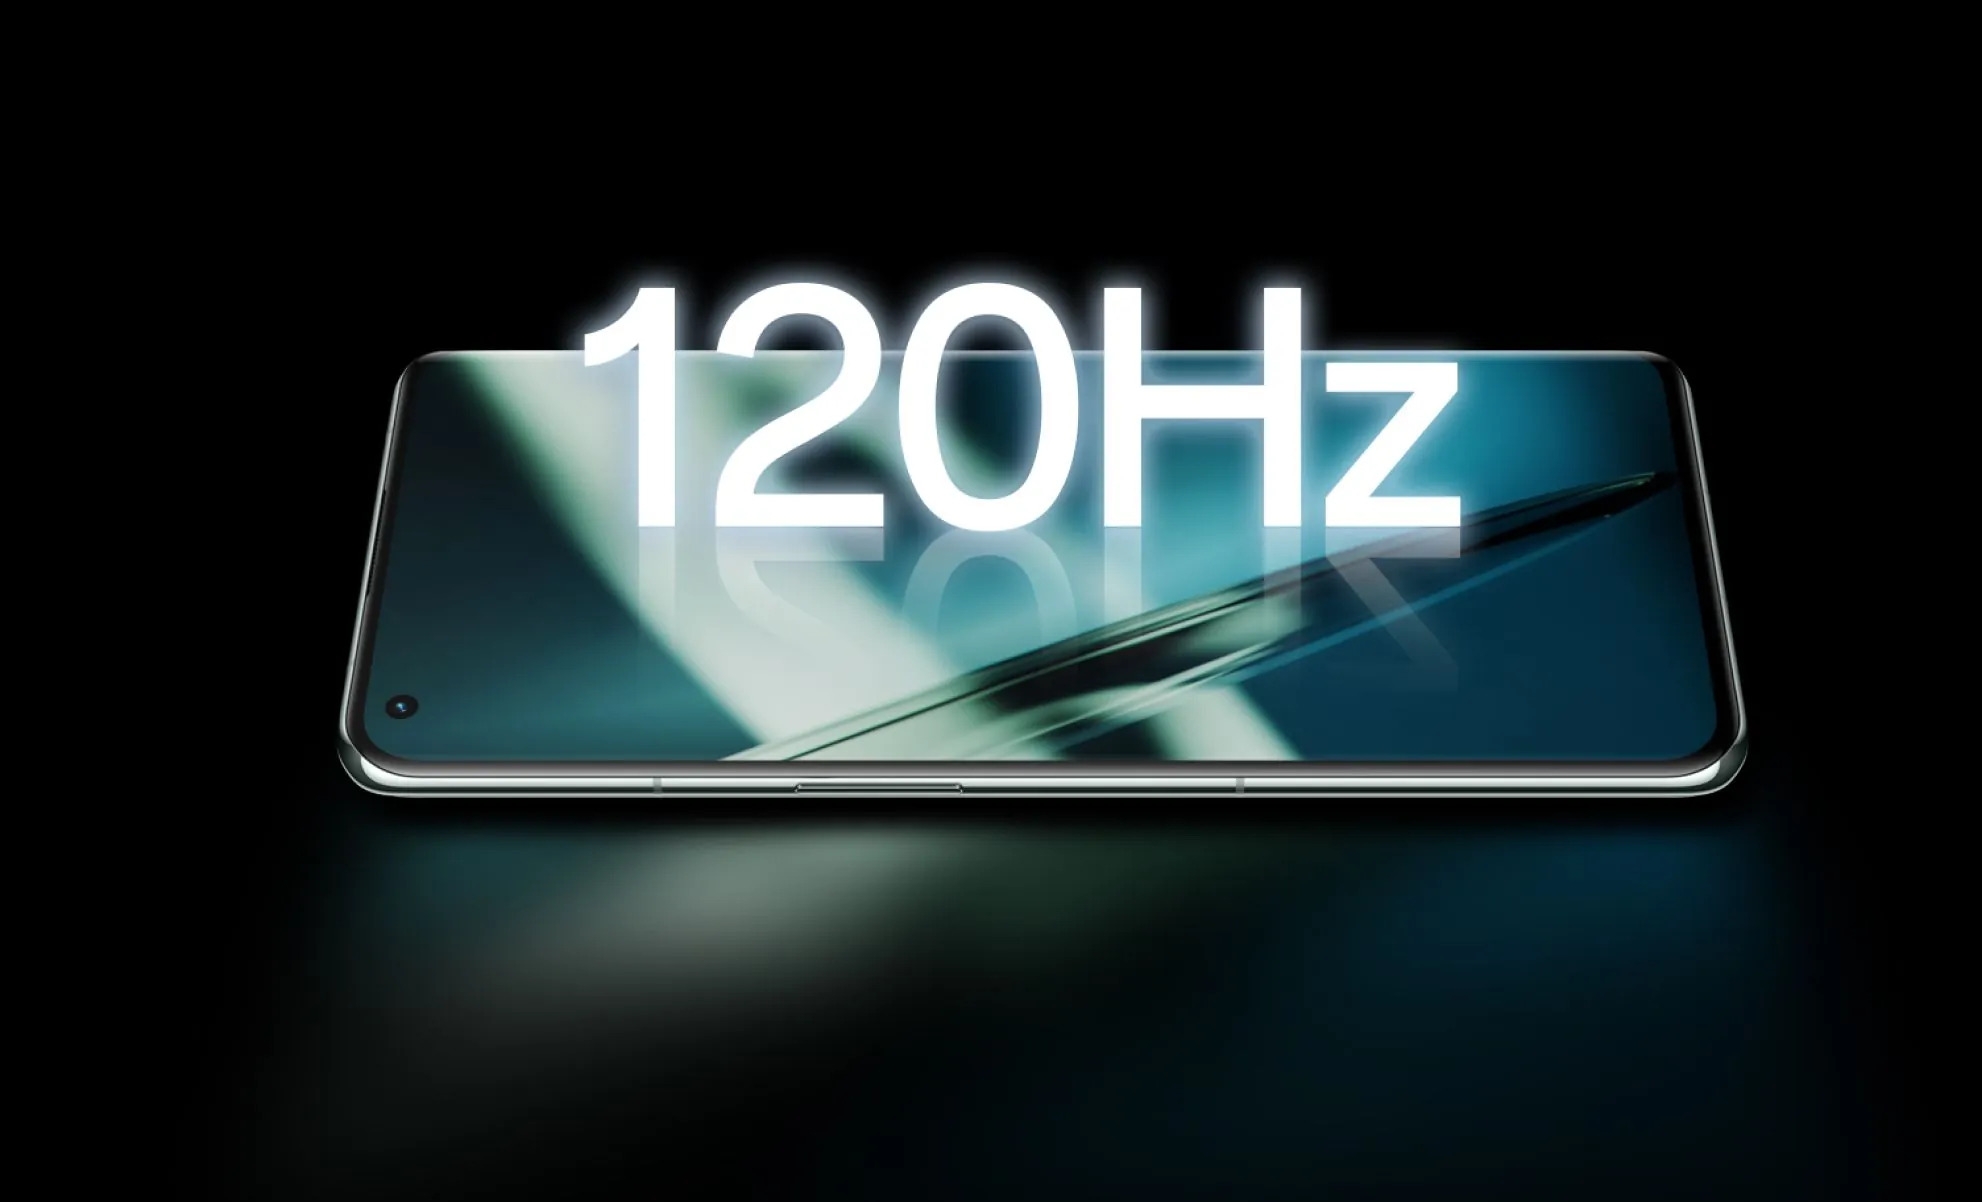 موبايل جوال ون بلس 11 رامات 16 جيجا – 256 جيجا تخزين OnePlus 11 5G Smartphone